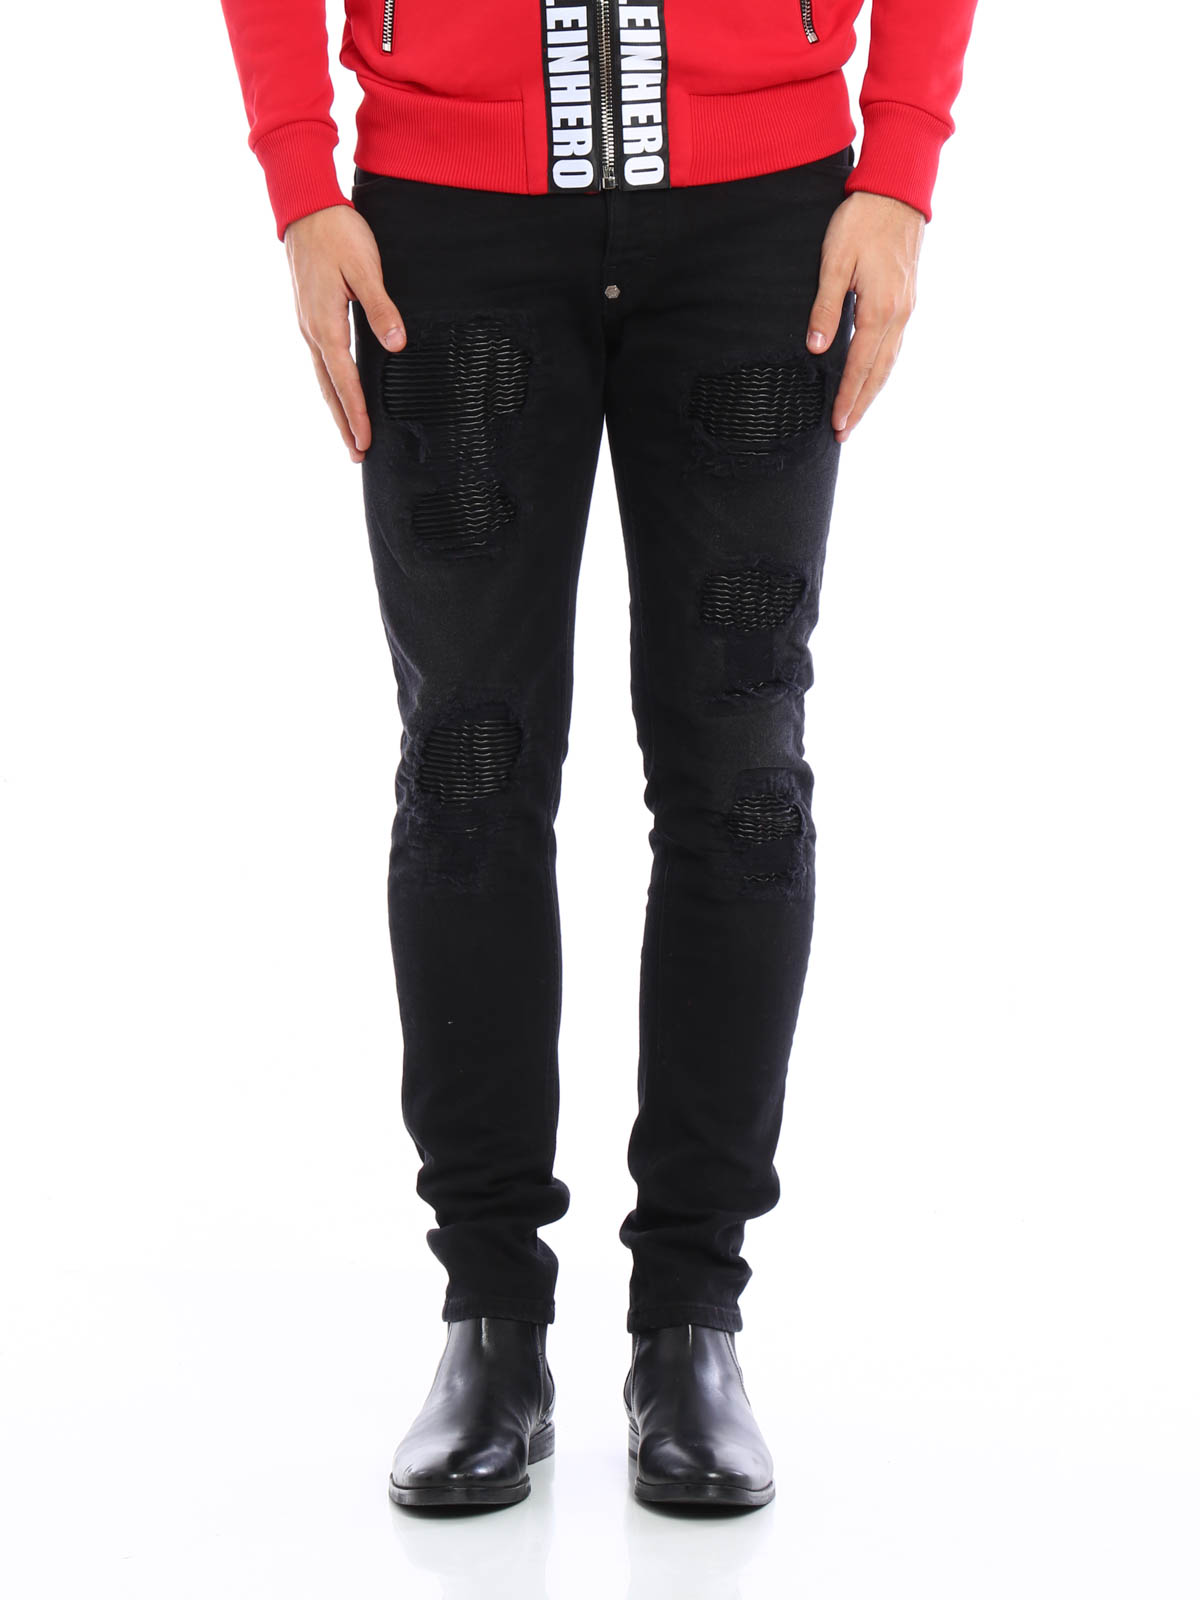 neem medicijnen uitblinken kleermaker Straight leg jeans Philipp Plein - Biker style jeans - HD11254502BA